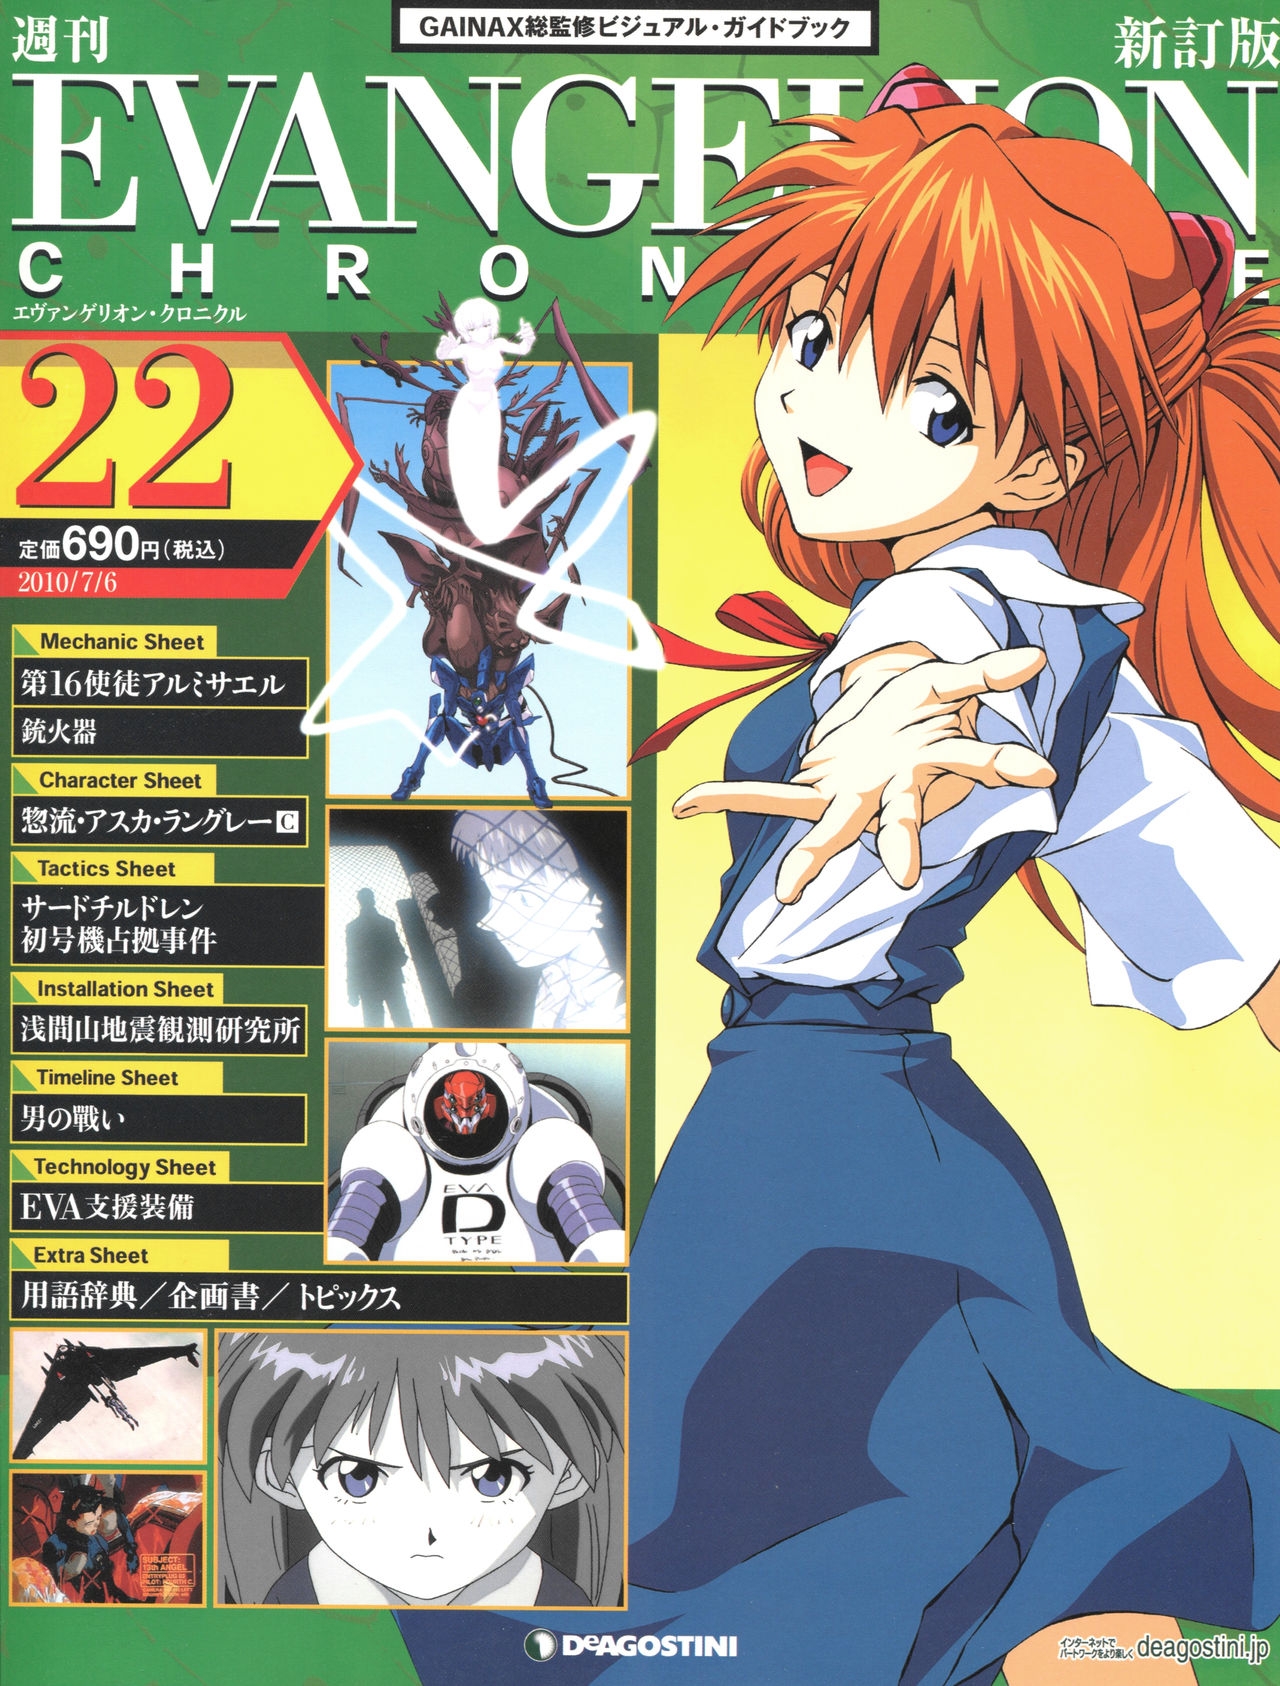 Evangelion Chronicle 22 0